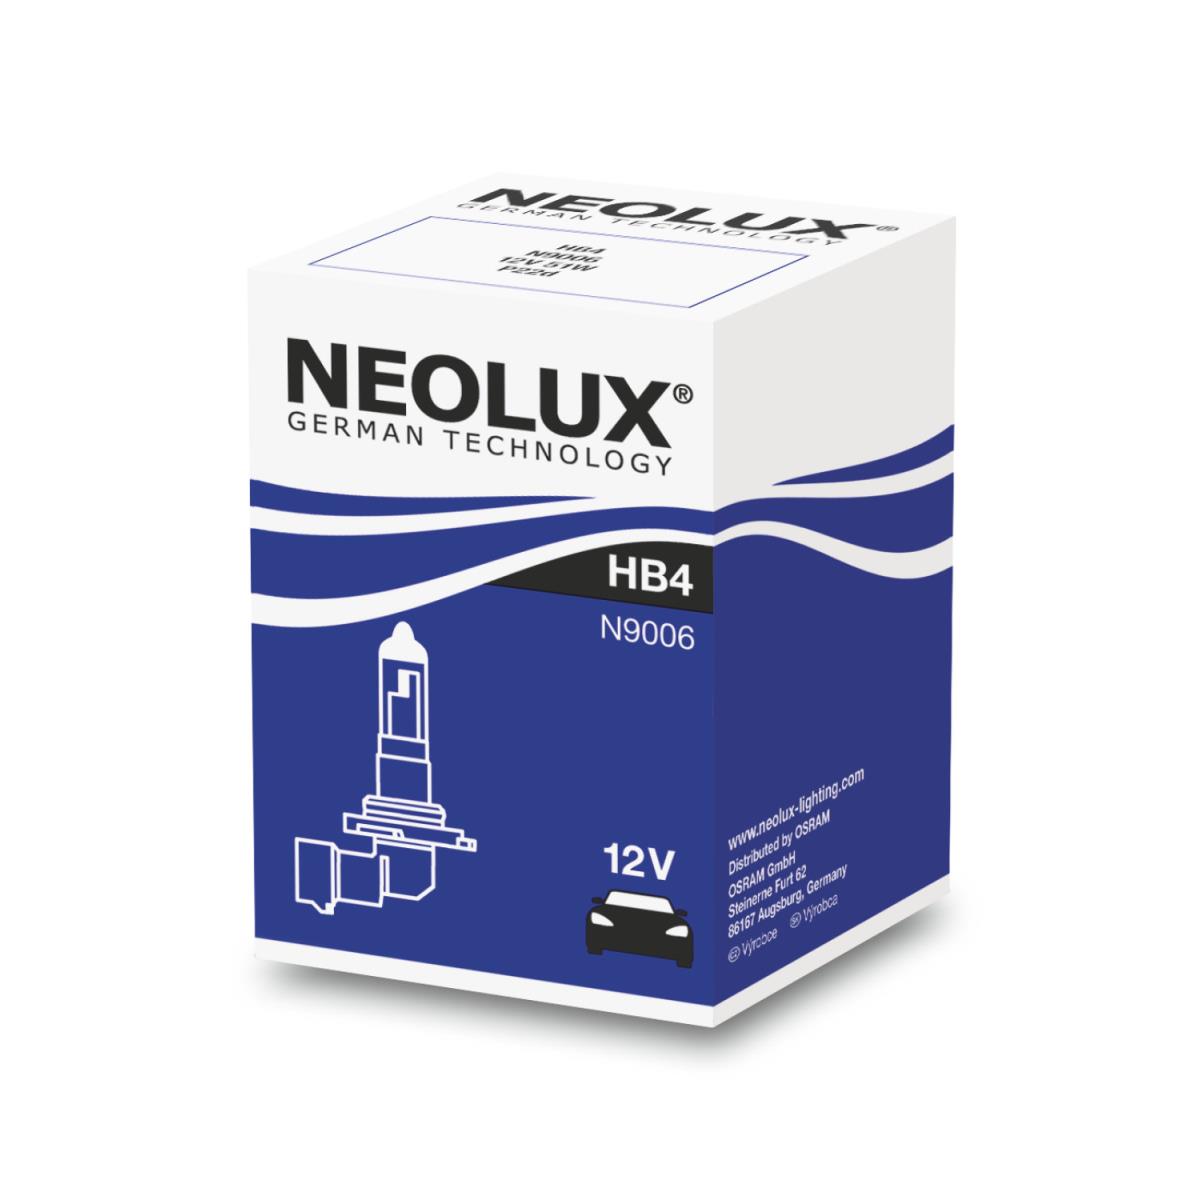 NEOLUX HB4 Standard 51W P22d 12V Lampe Birne